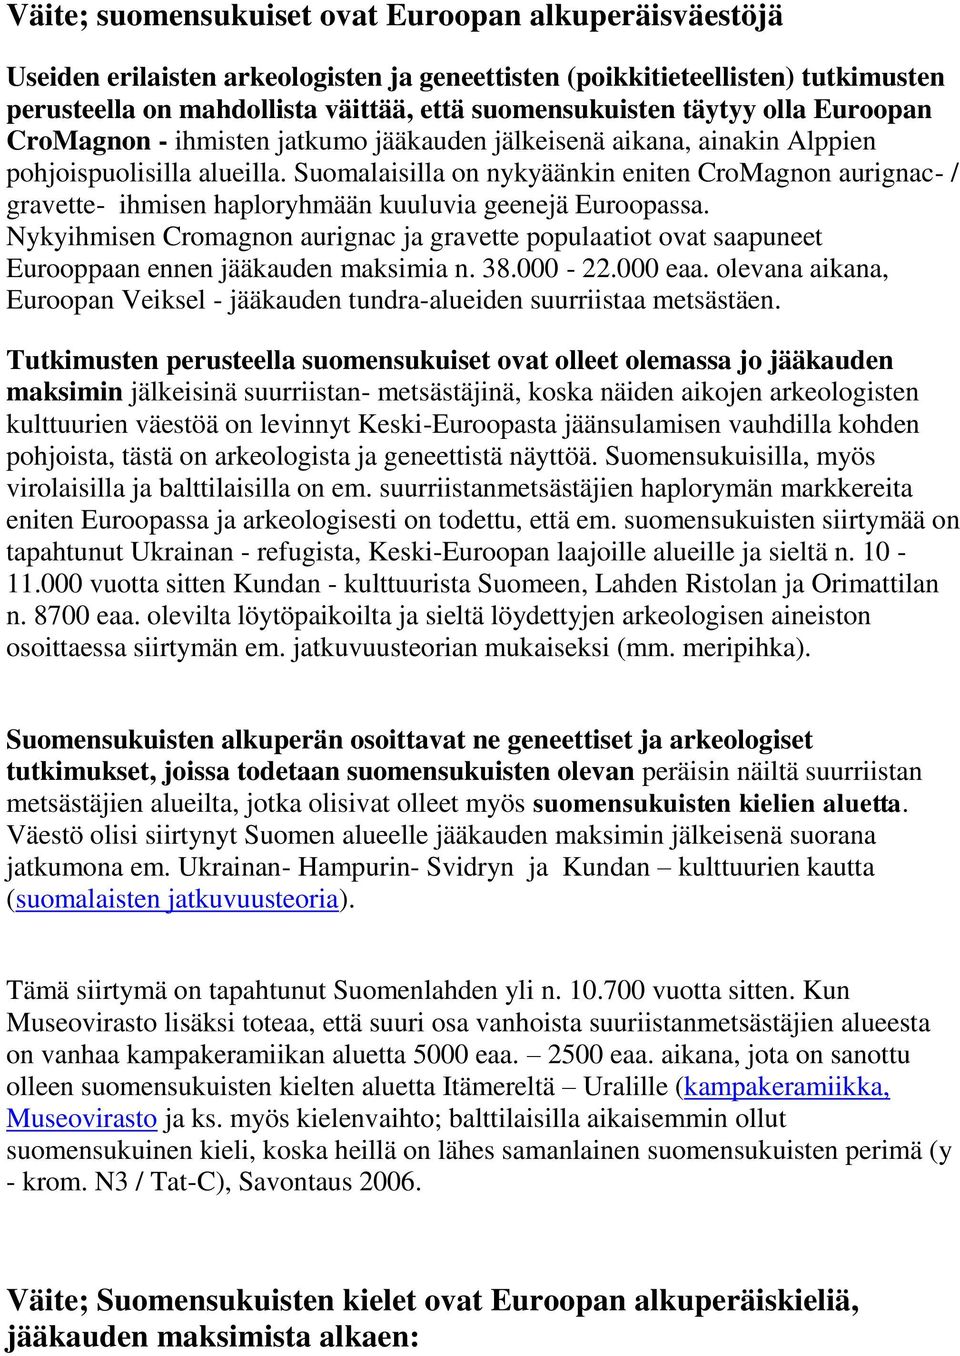 Suomalaisilla on nykyäänkin eniten CroMagnon aurignac- / gravette- ihmisen haploryhmään kuuluvia geenejä Euroopassa.